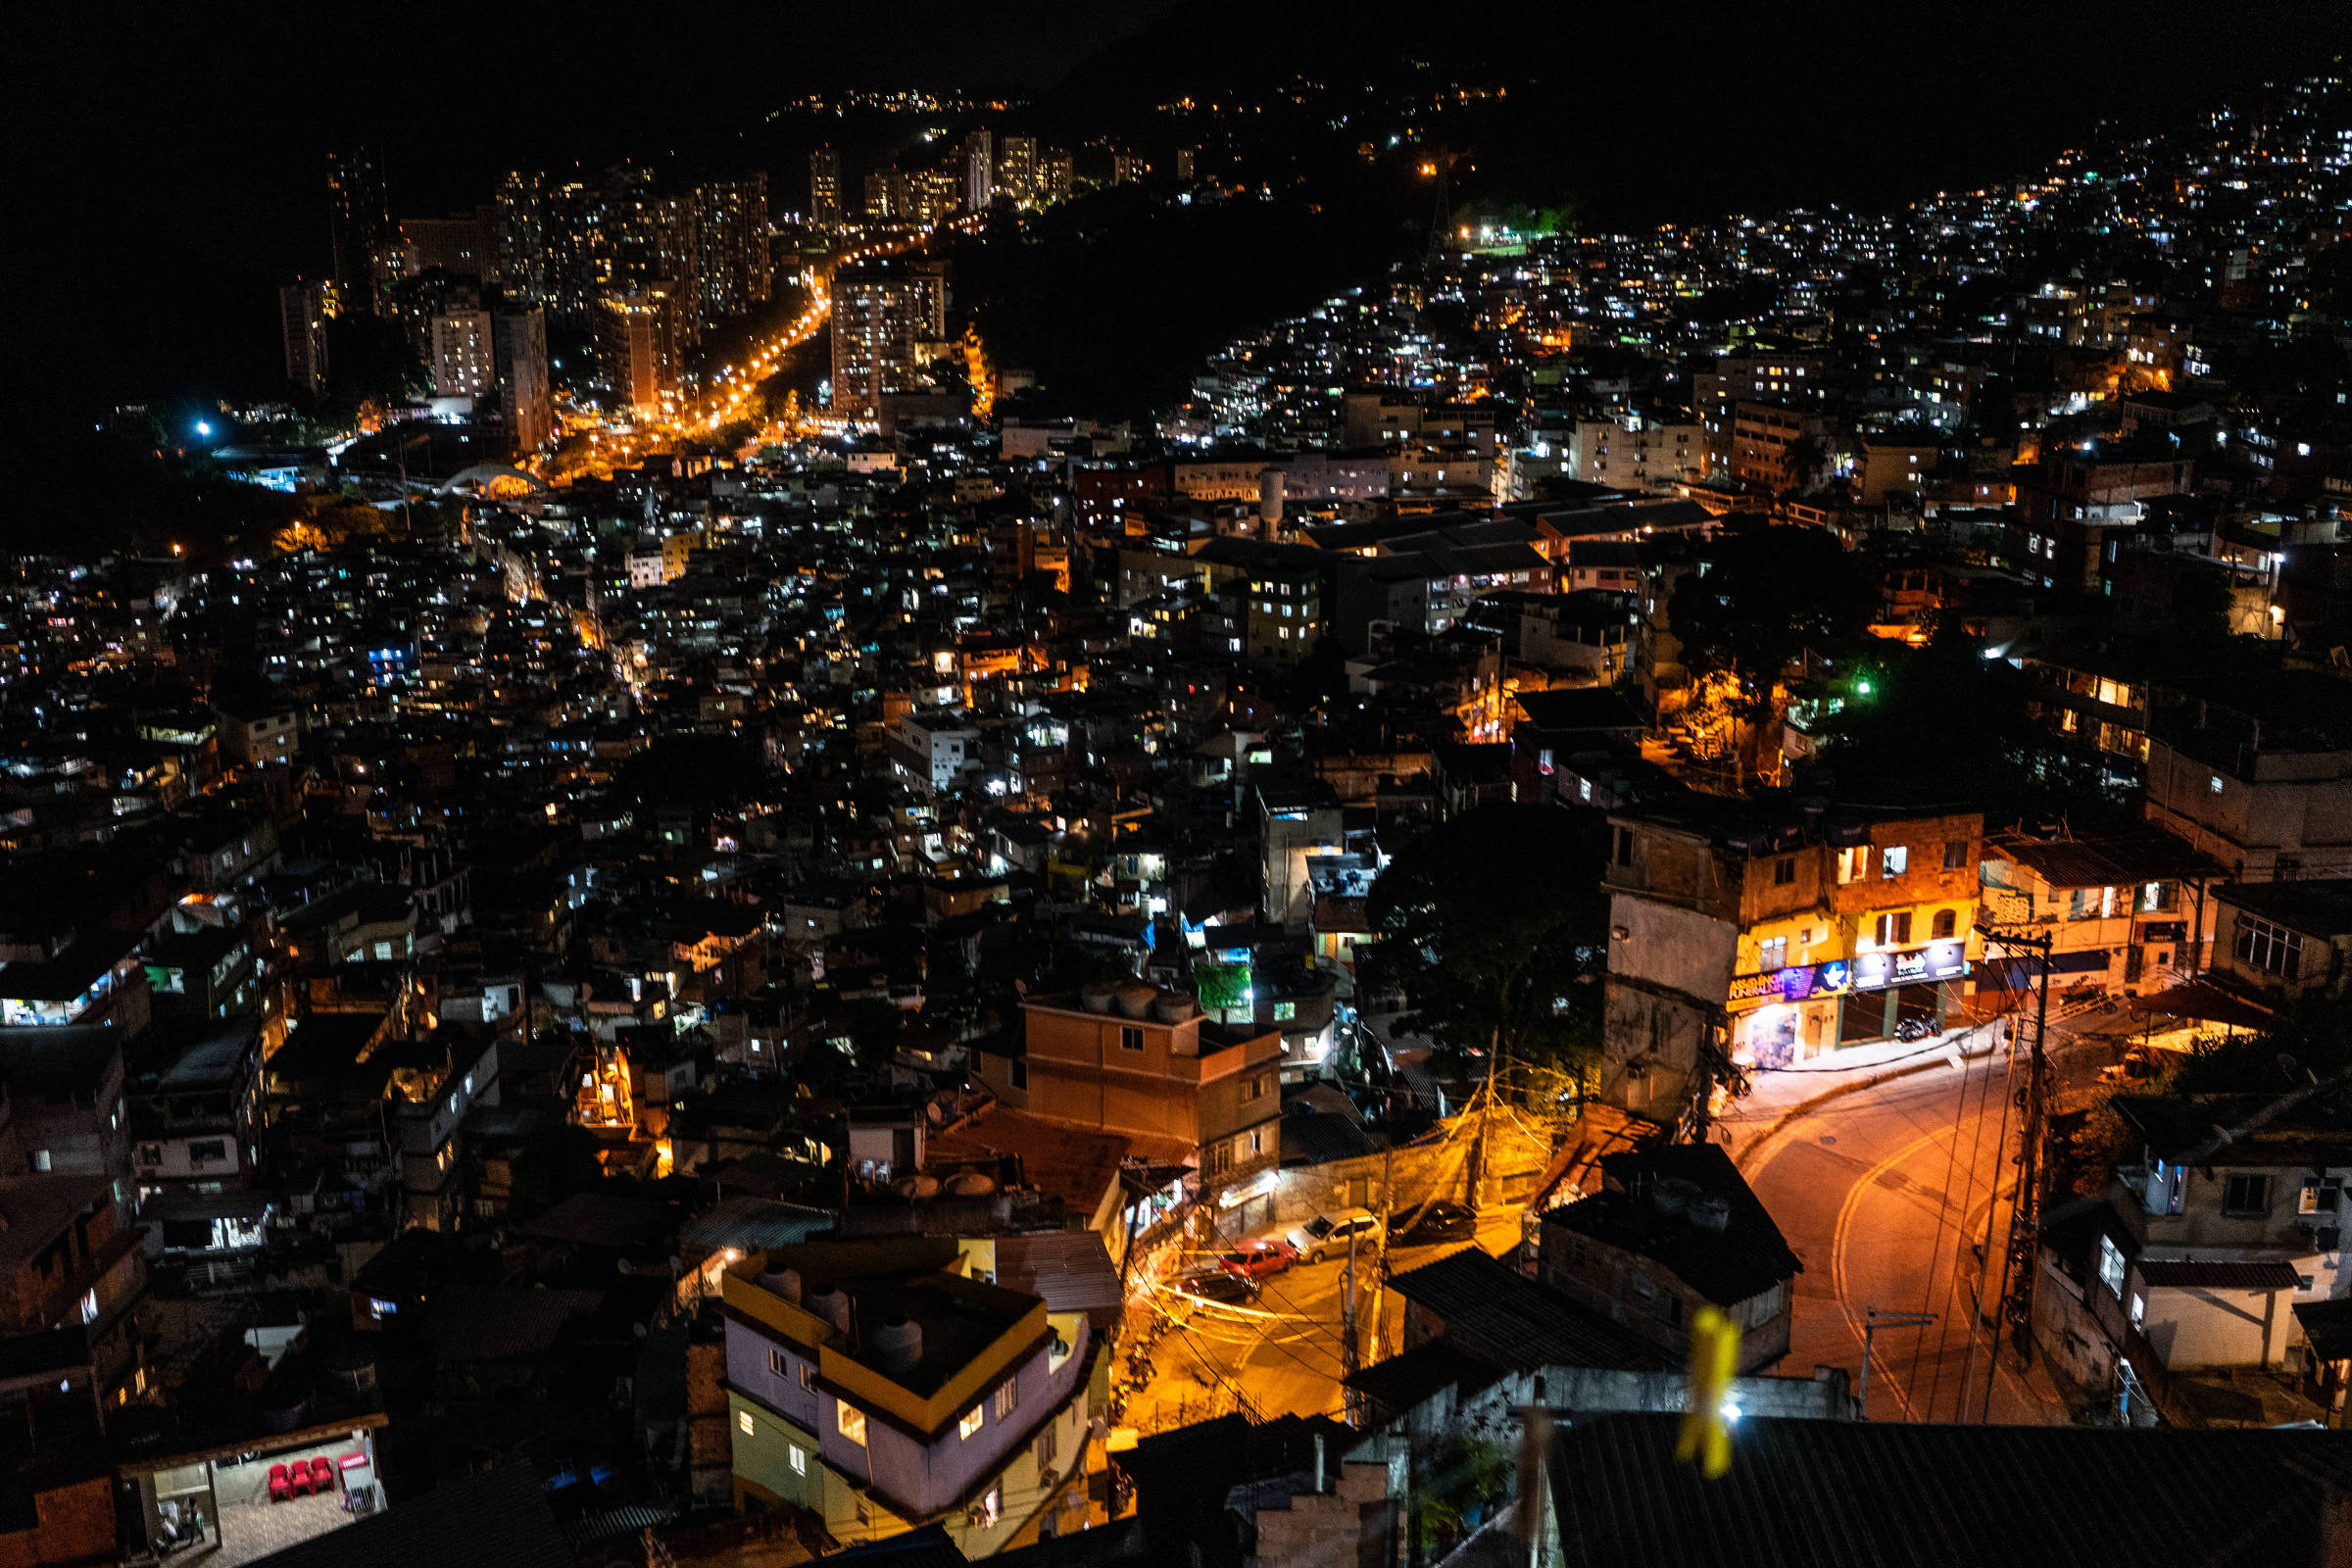 Favela do Rio será pano de fundo para jogo de tiro - Diário do Rio de  Janeiro